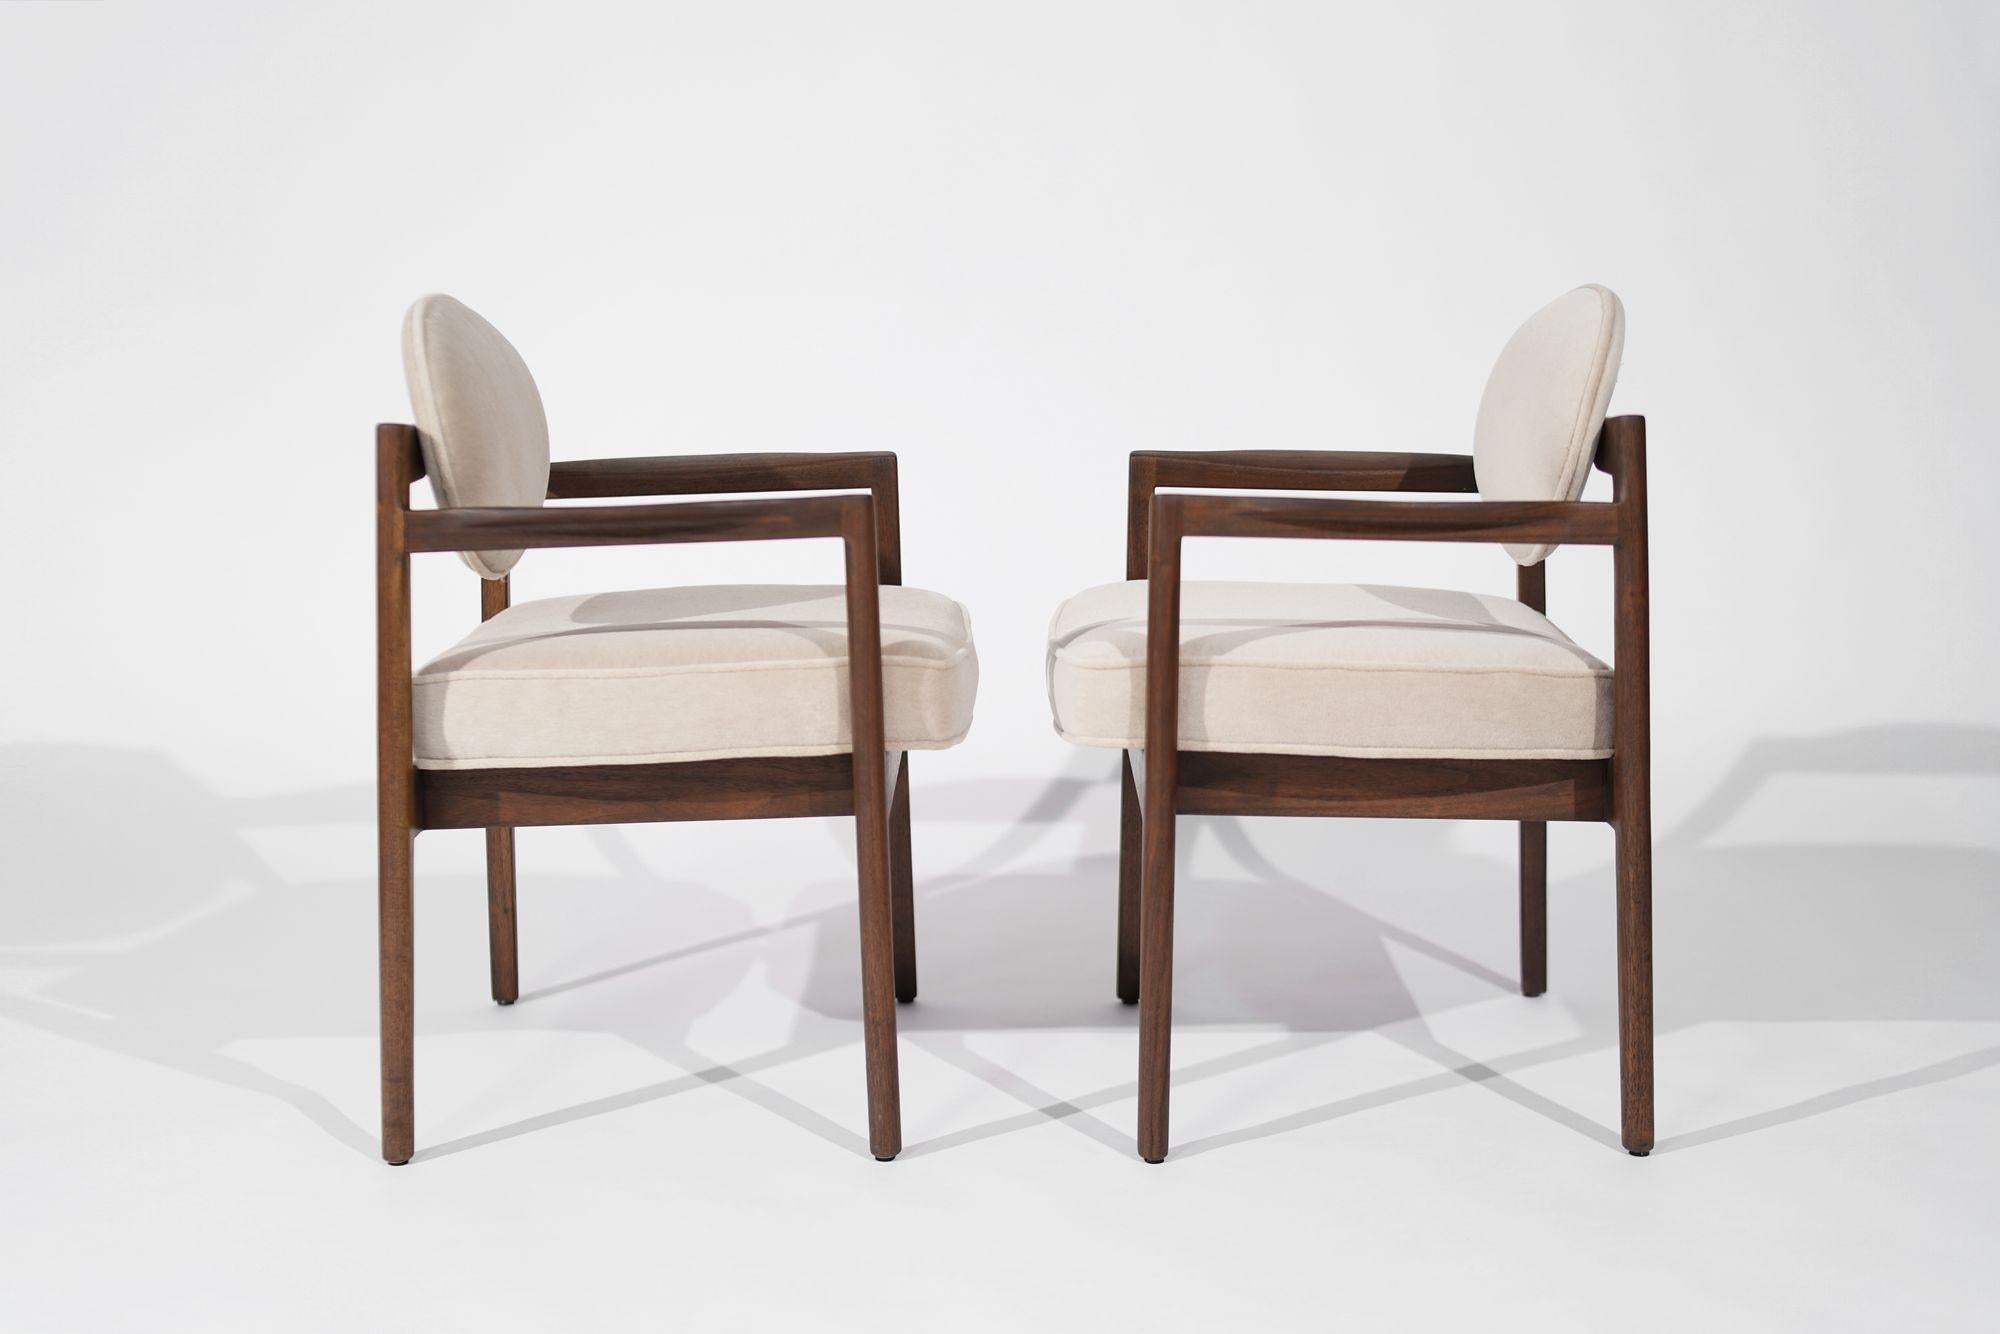 Ein exquisites Paar moderner Sessel aus der Mitte des Jahrhunderts, entworfen von Jens Risom, hergestellt um 1960-1969. Das sorgfältig restaurierte Nussbaumgestell erstrahlt in neuer Schönheit, ergänzt durch eine luxuriöse Neupolsterung aus